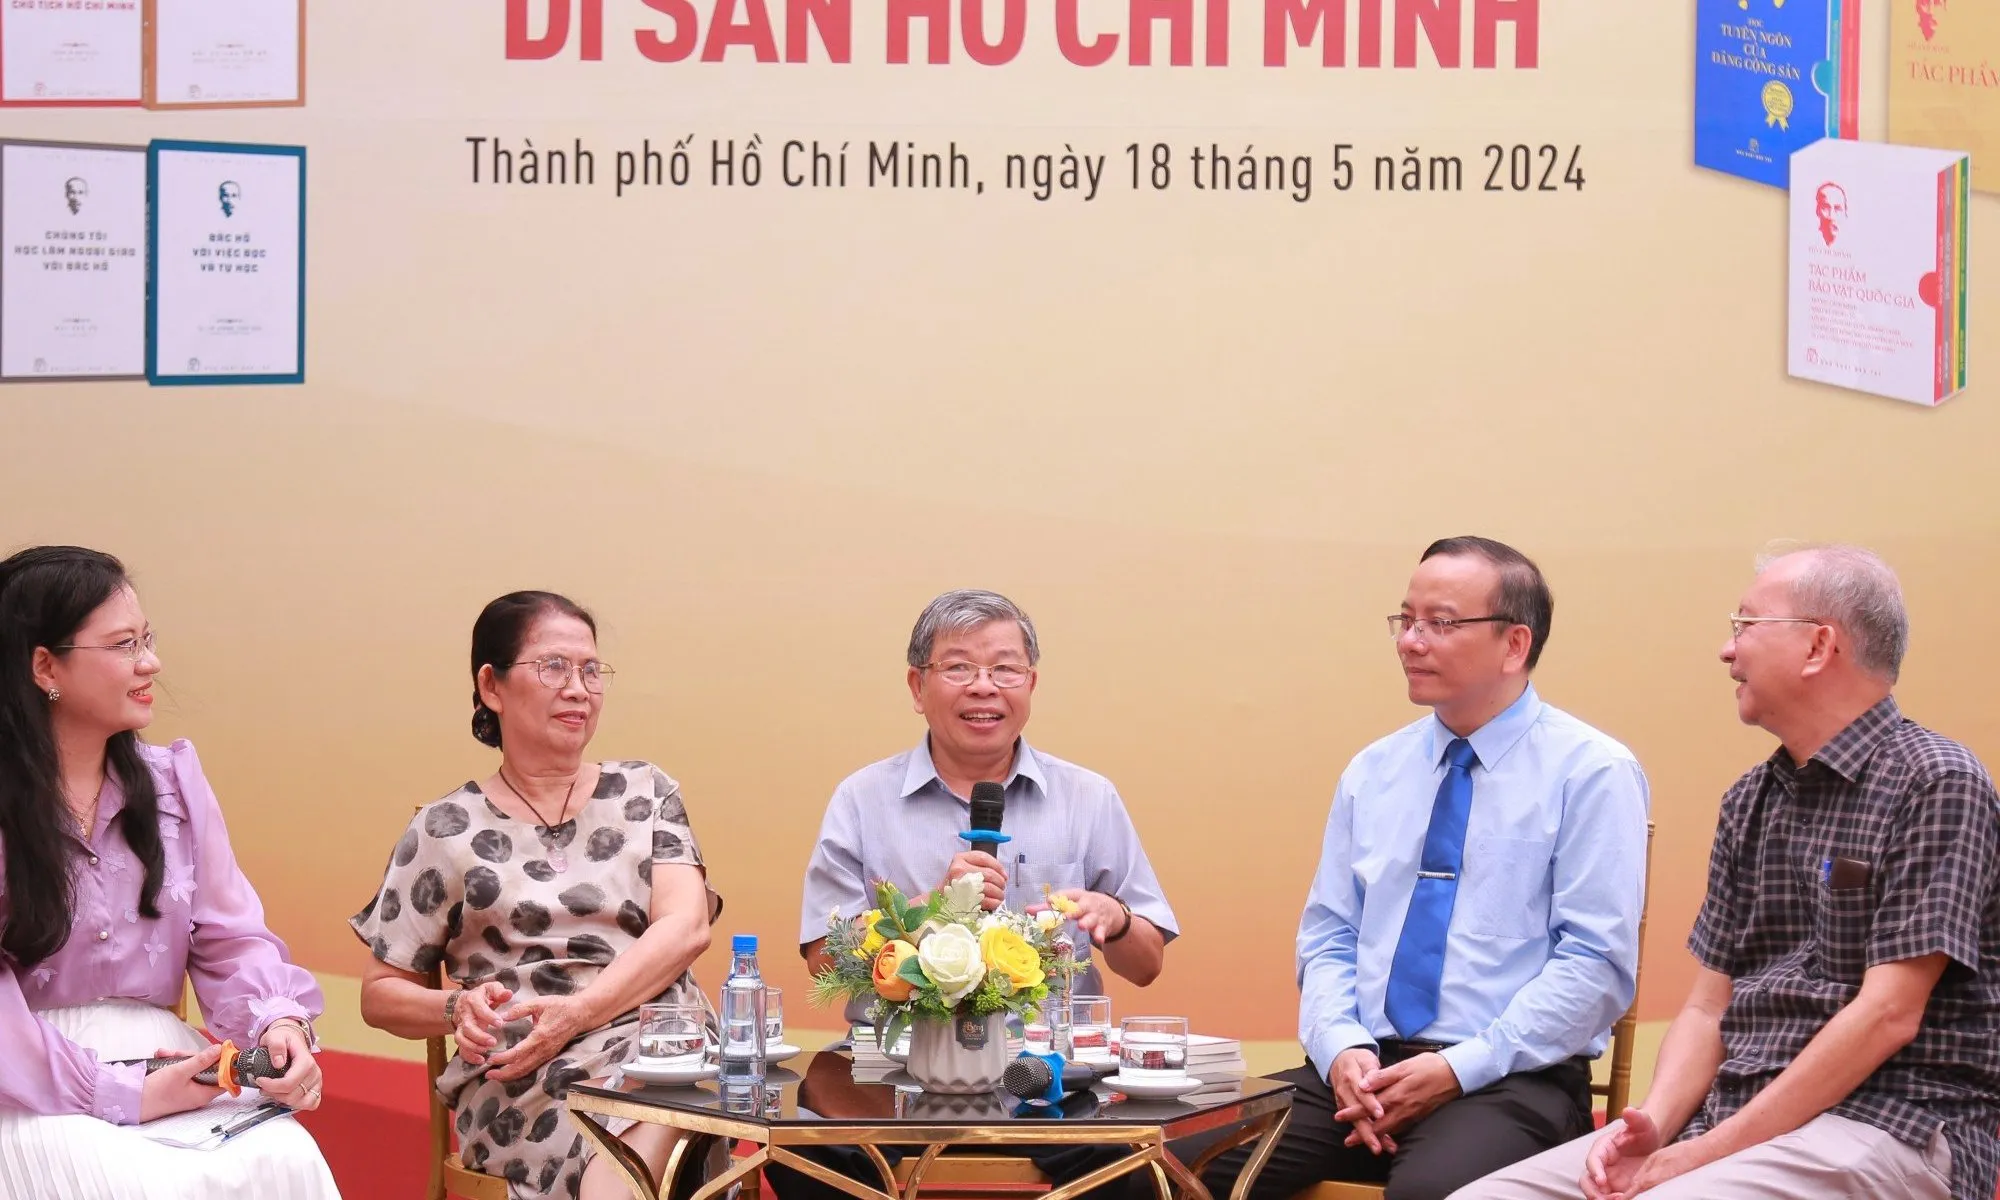 Nhà xuất bản Trẻ kỷ niệm 25 năm thành lập Tủ sách Di sản Hồ Chí Minh